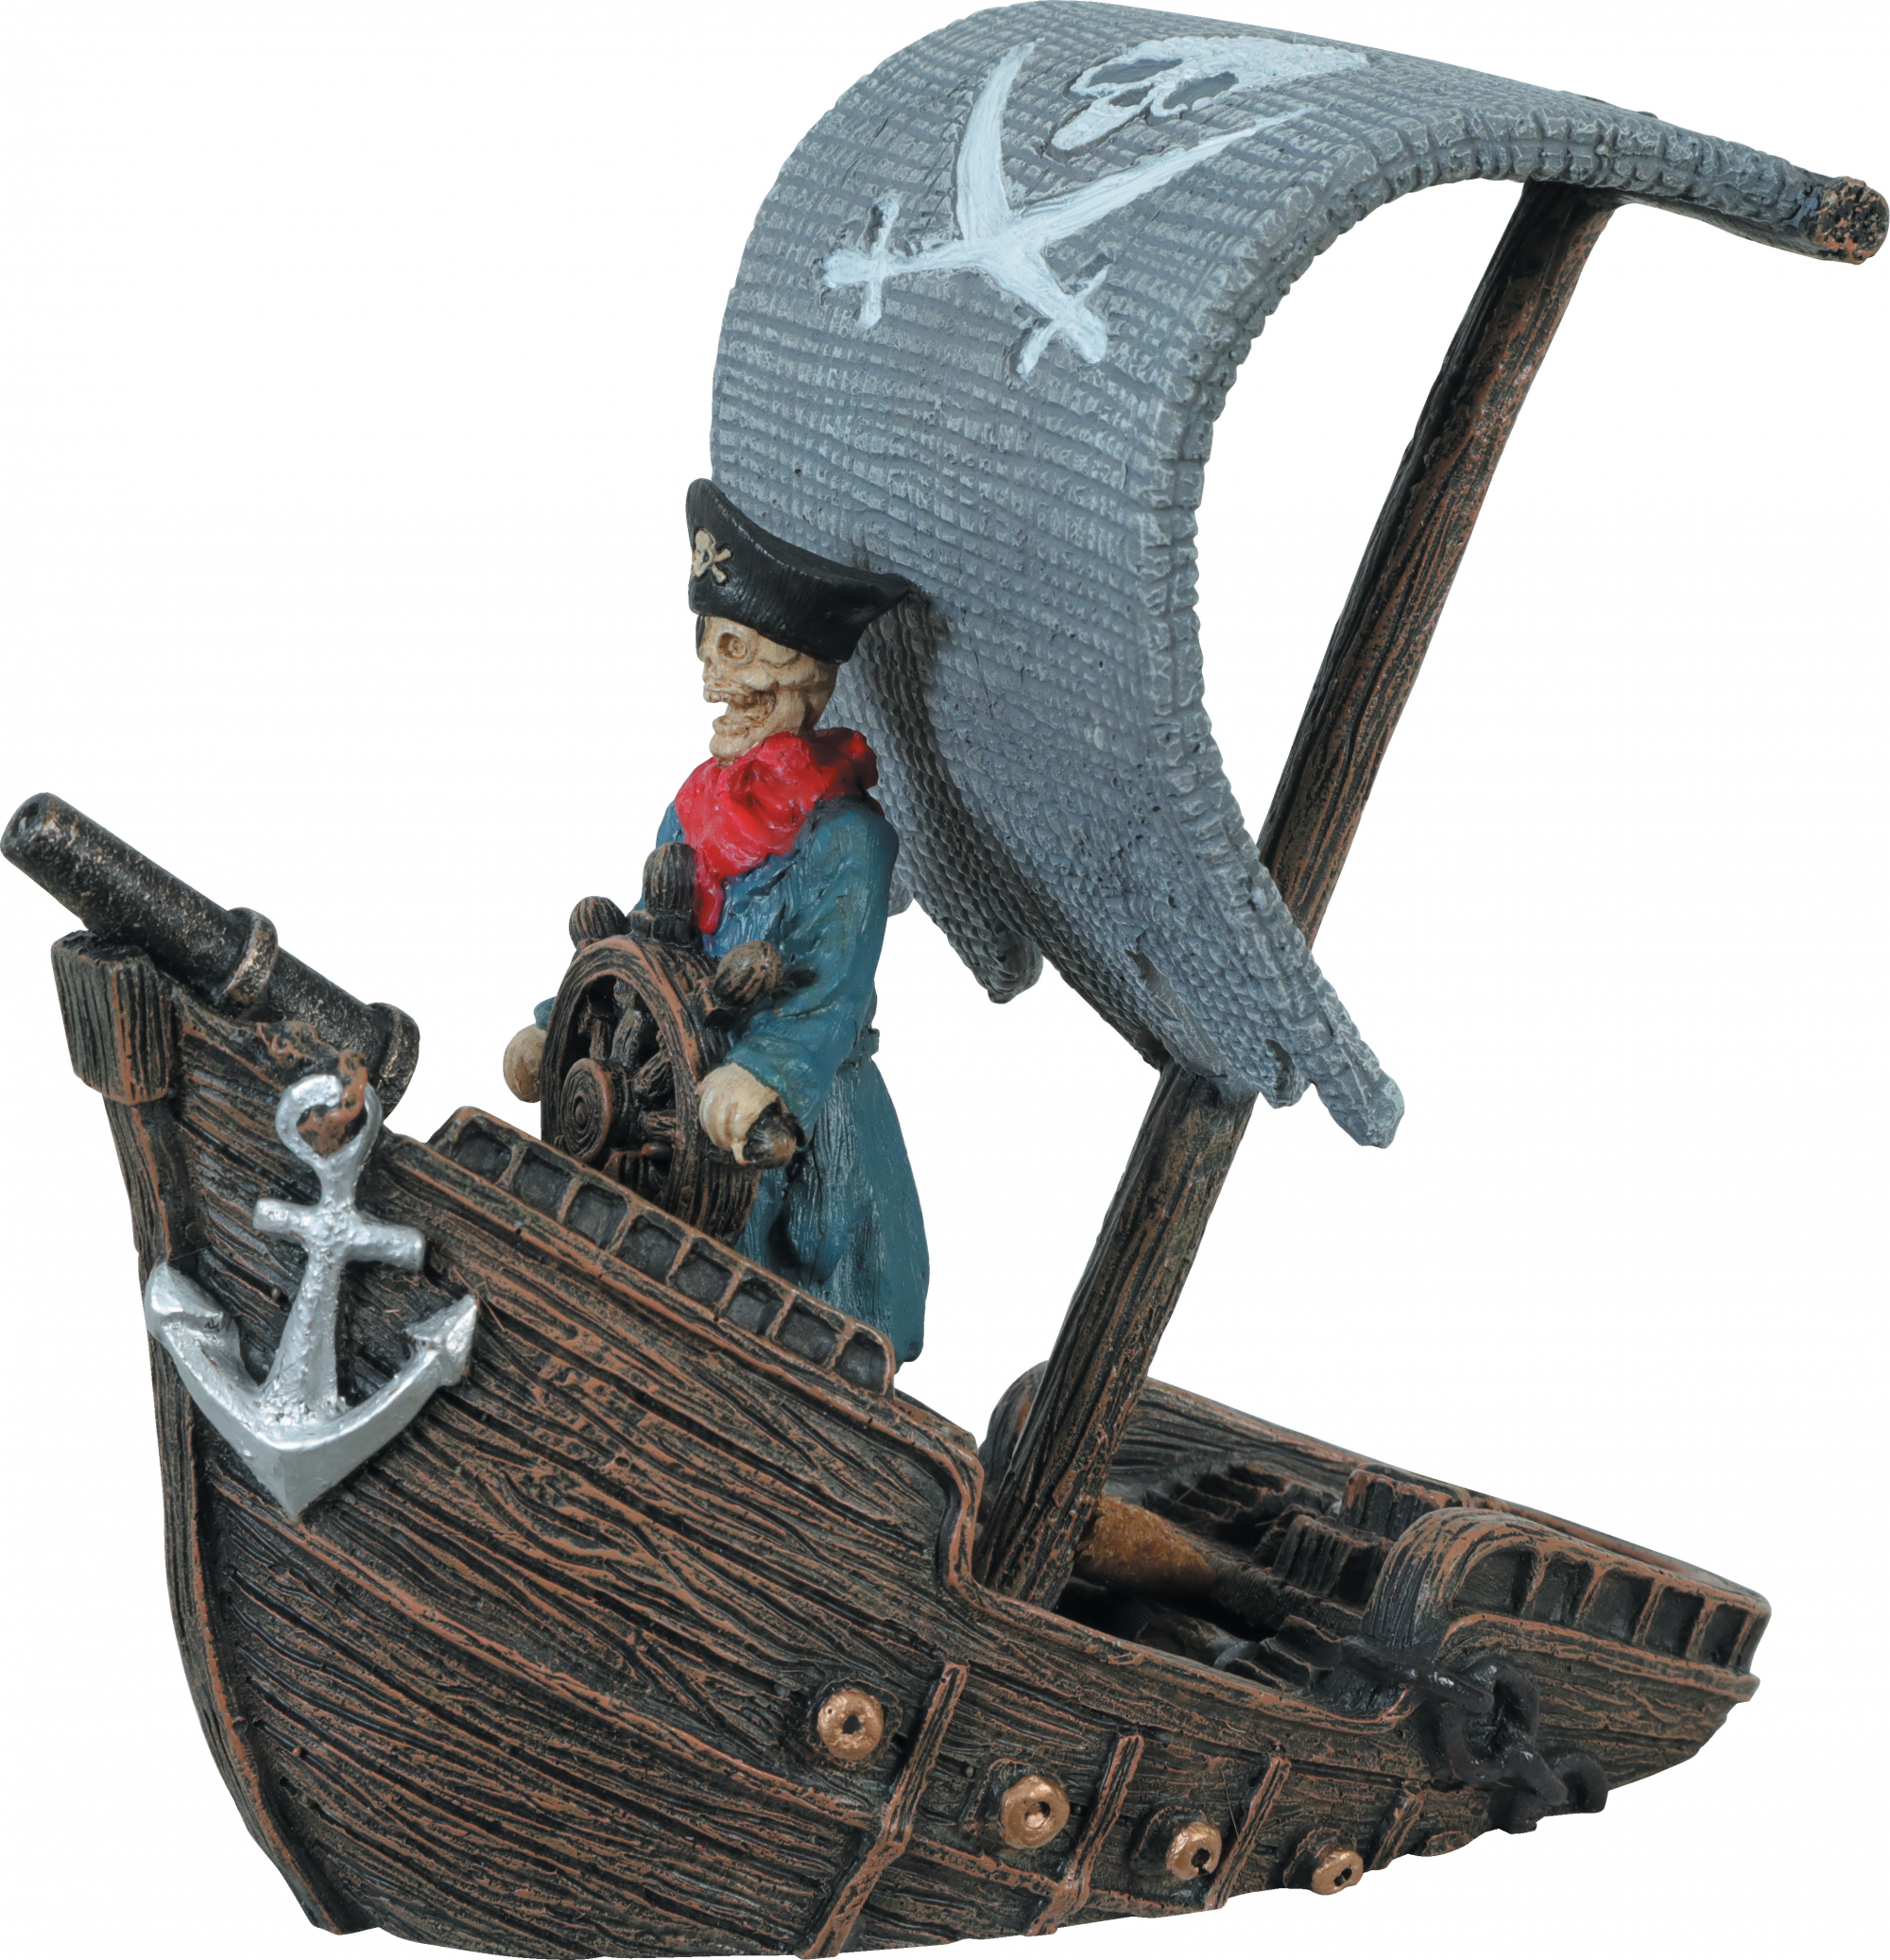 Decorazione per acquario con nave pirata